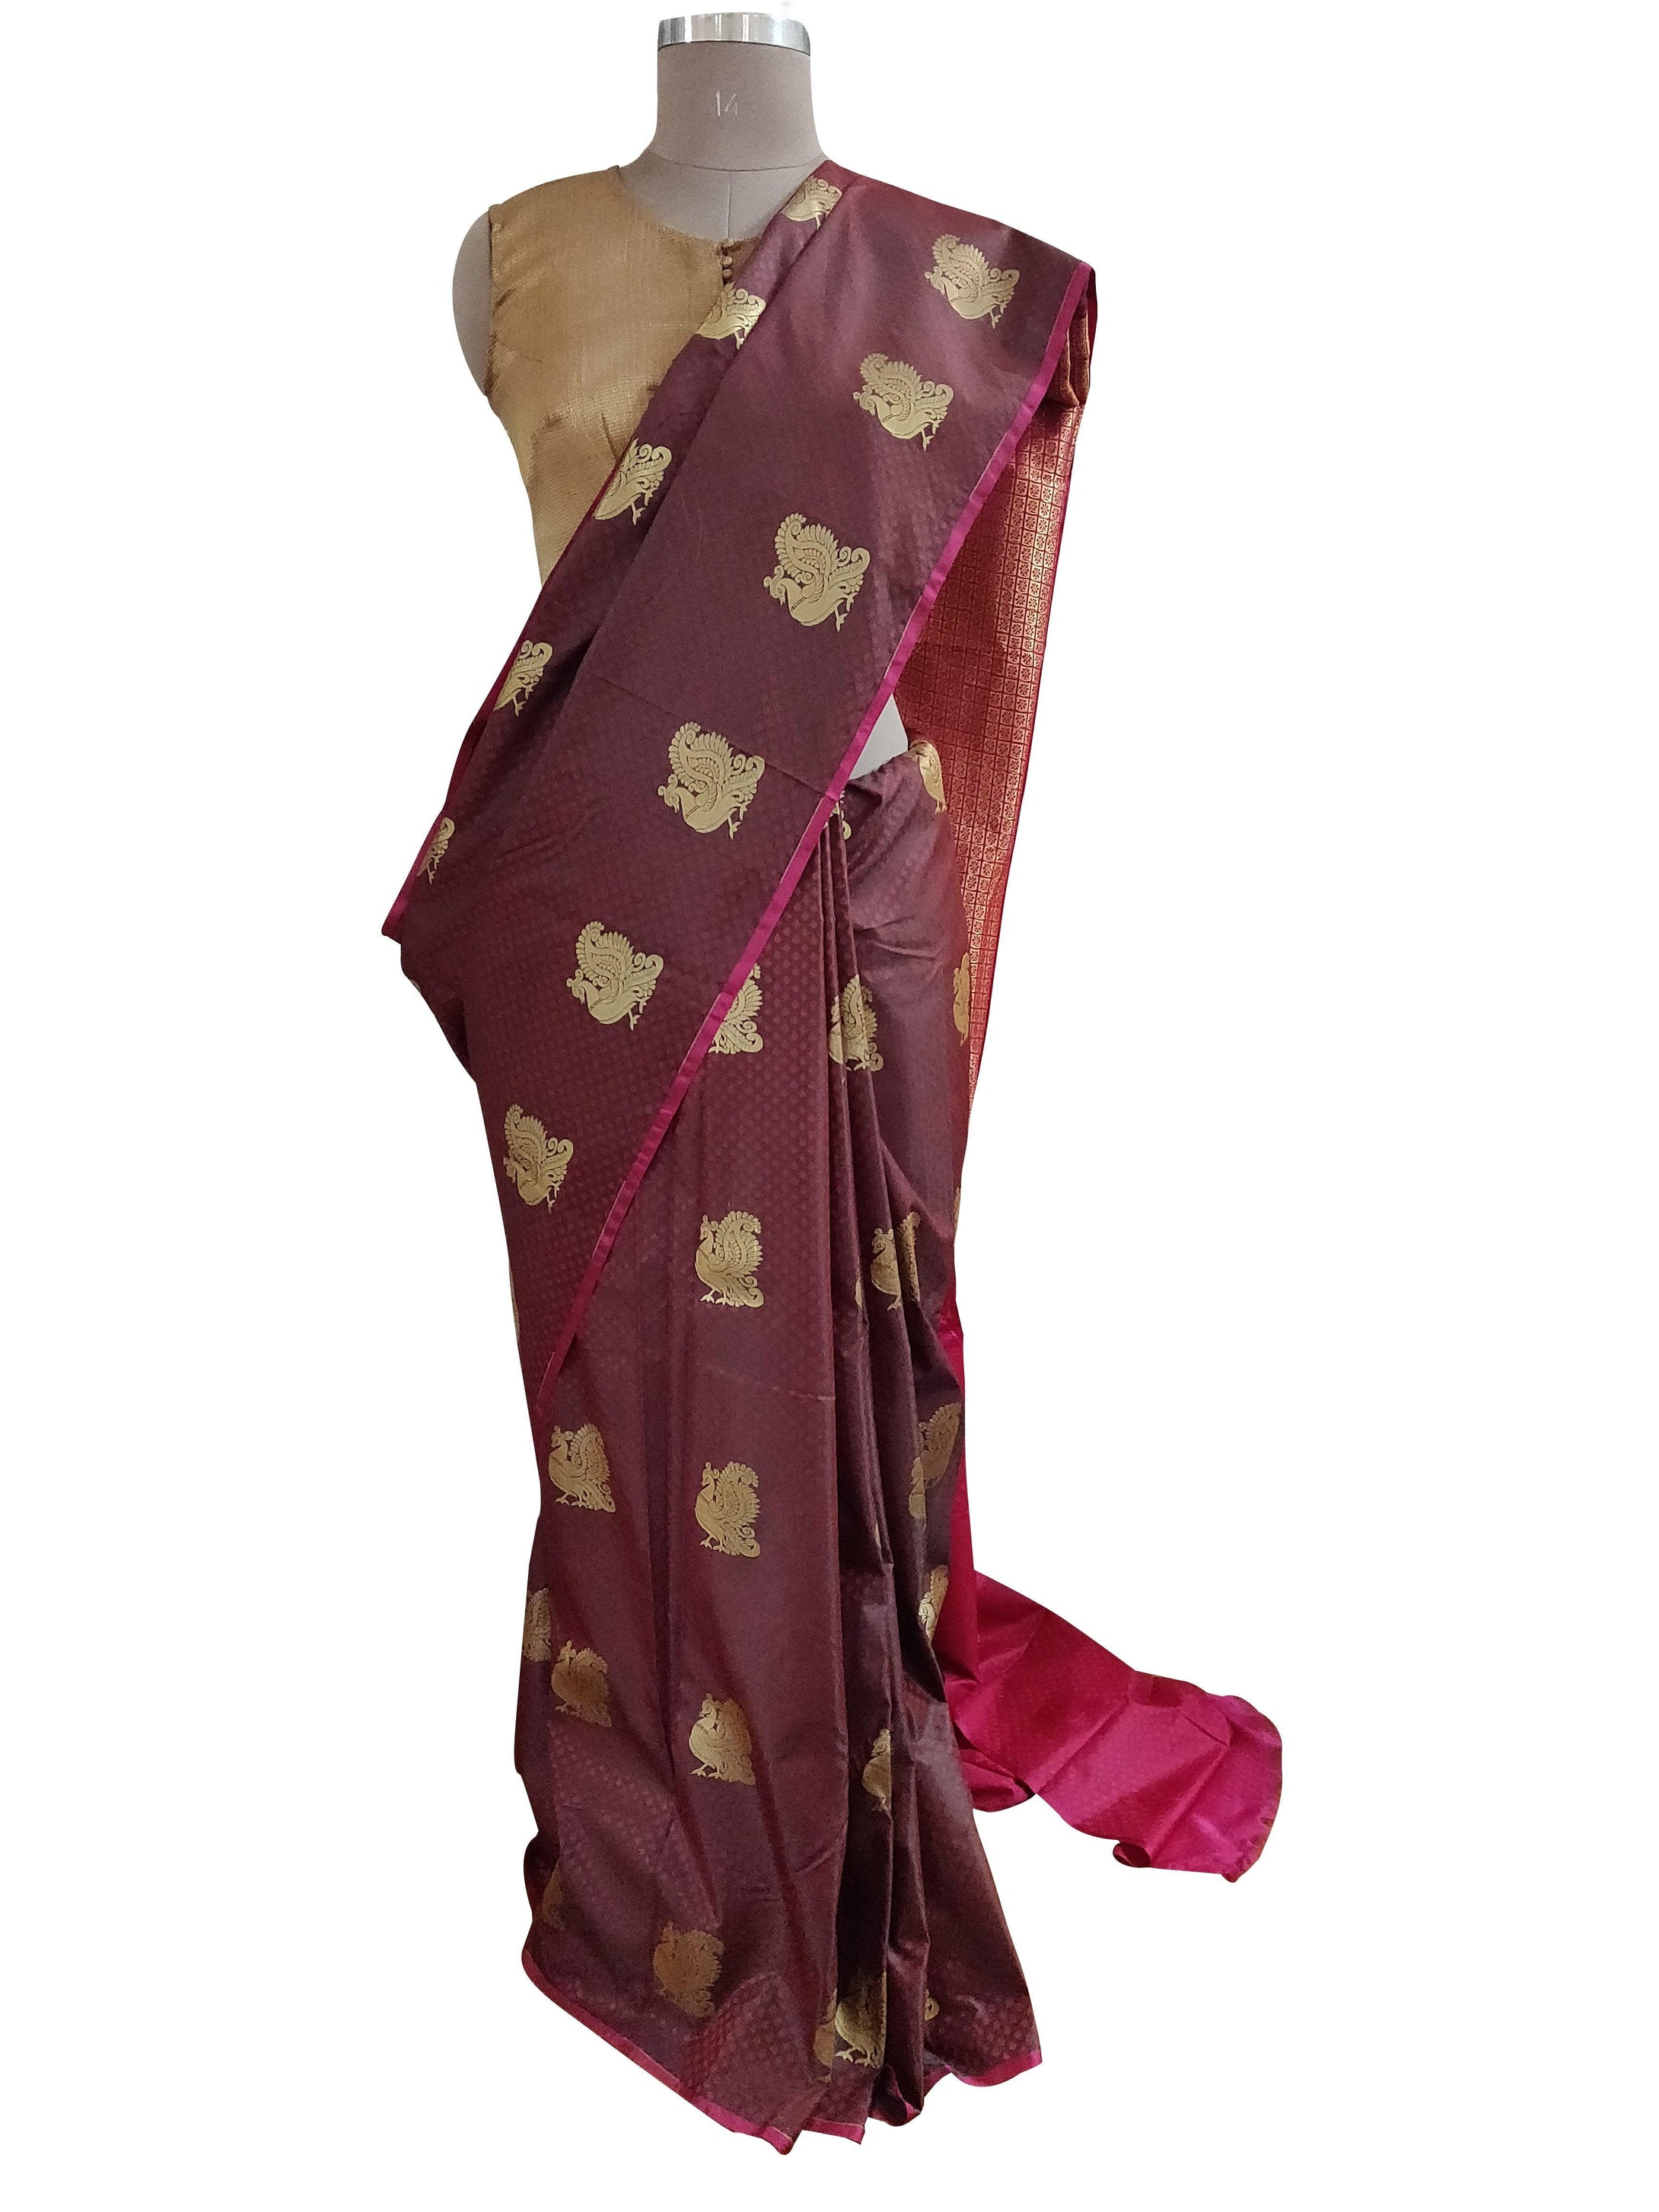 Maroon Kanchi Blend Kanjivaram Silk Saree Kanchi02-Anvi Creations-Kanchi Blend Saree,Kanjivaram Saree